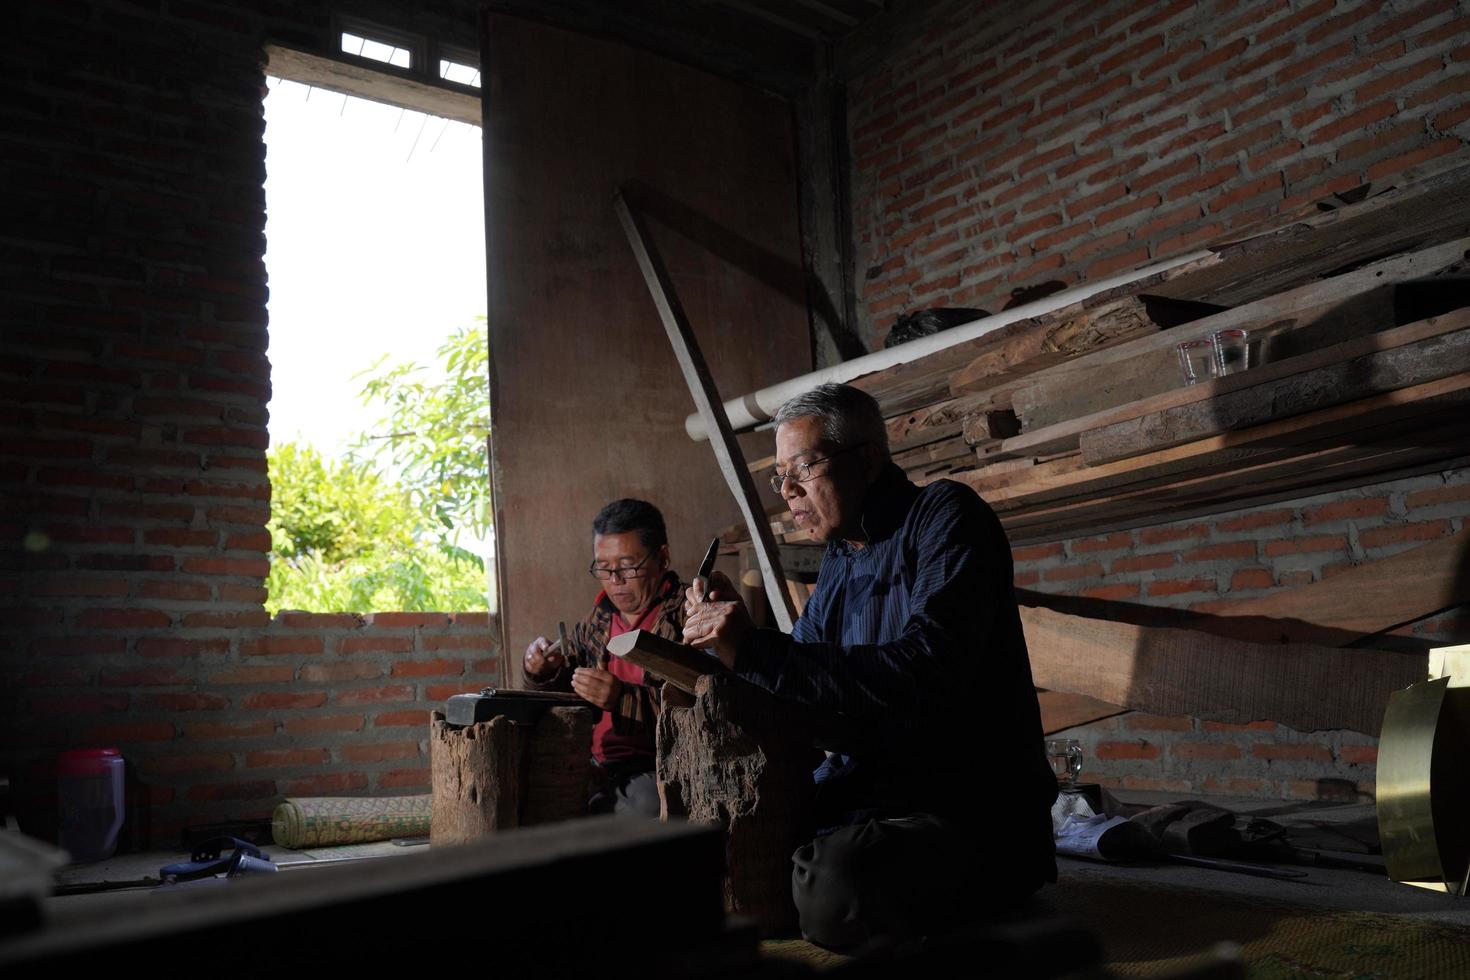 keris artigiani nel il officina, nel il processi di fabbricazione keris. banto, Indonesia - 25 agosto 2022 foto